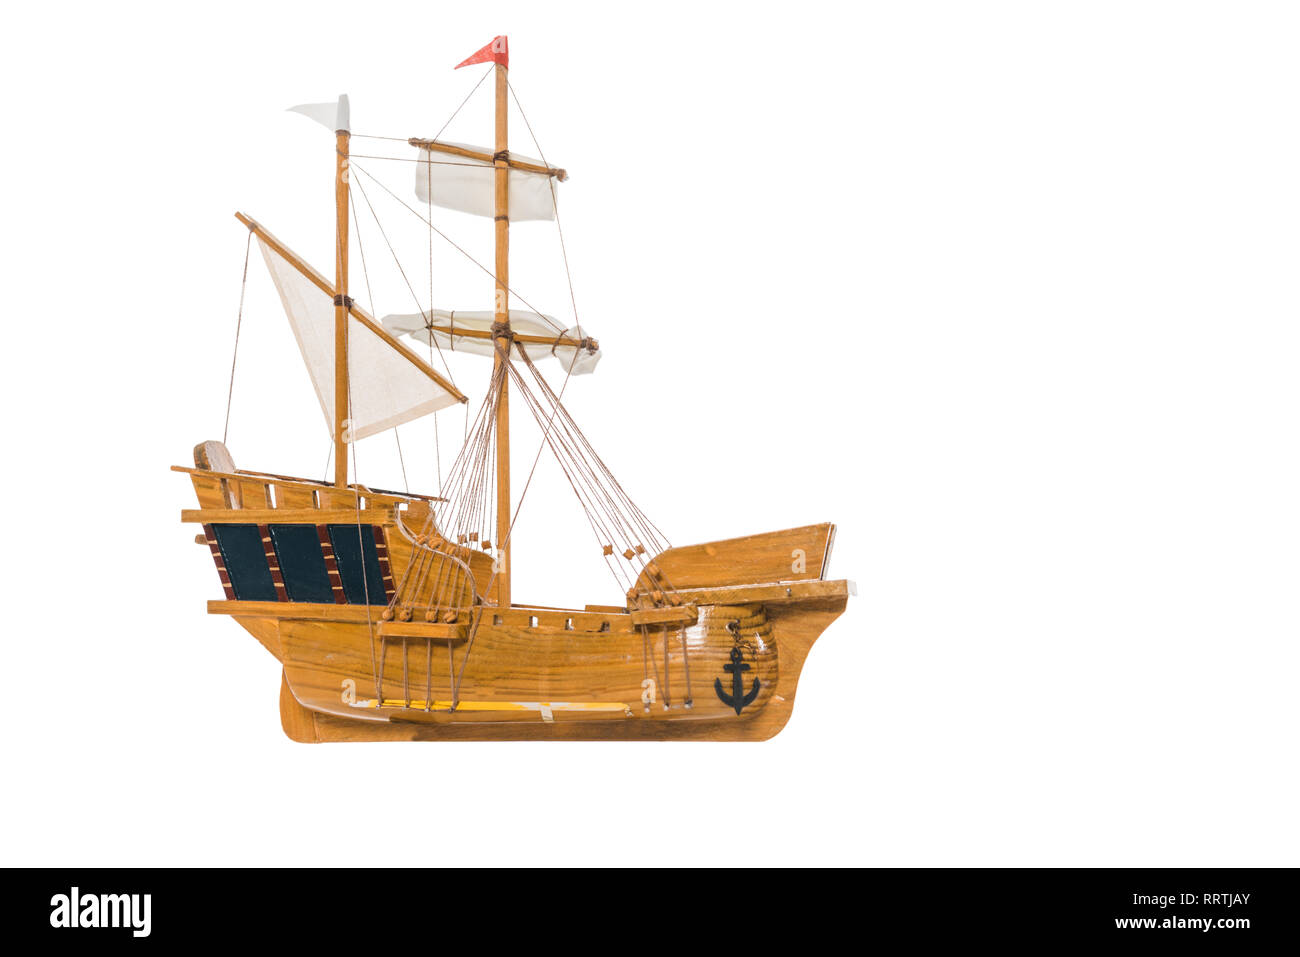 Modèle de navire vintage dans l'air flottant isolated on white with copy space Banque D'Images